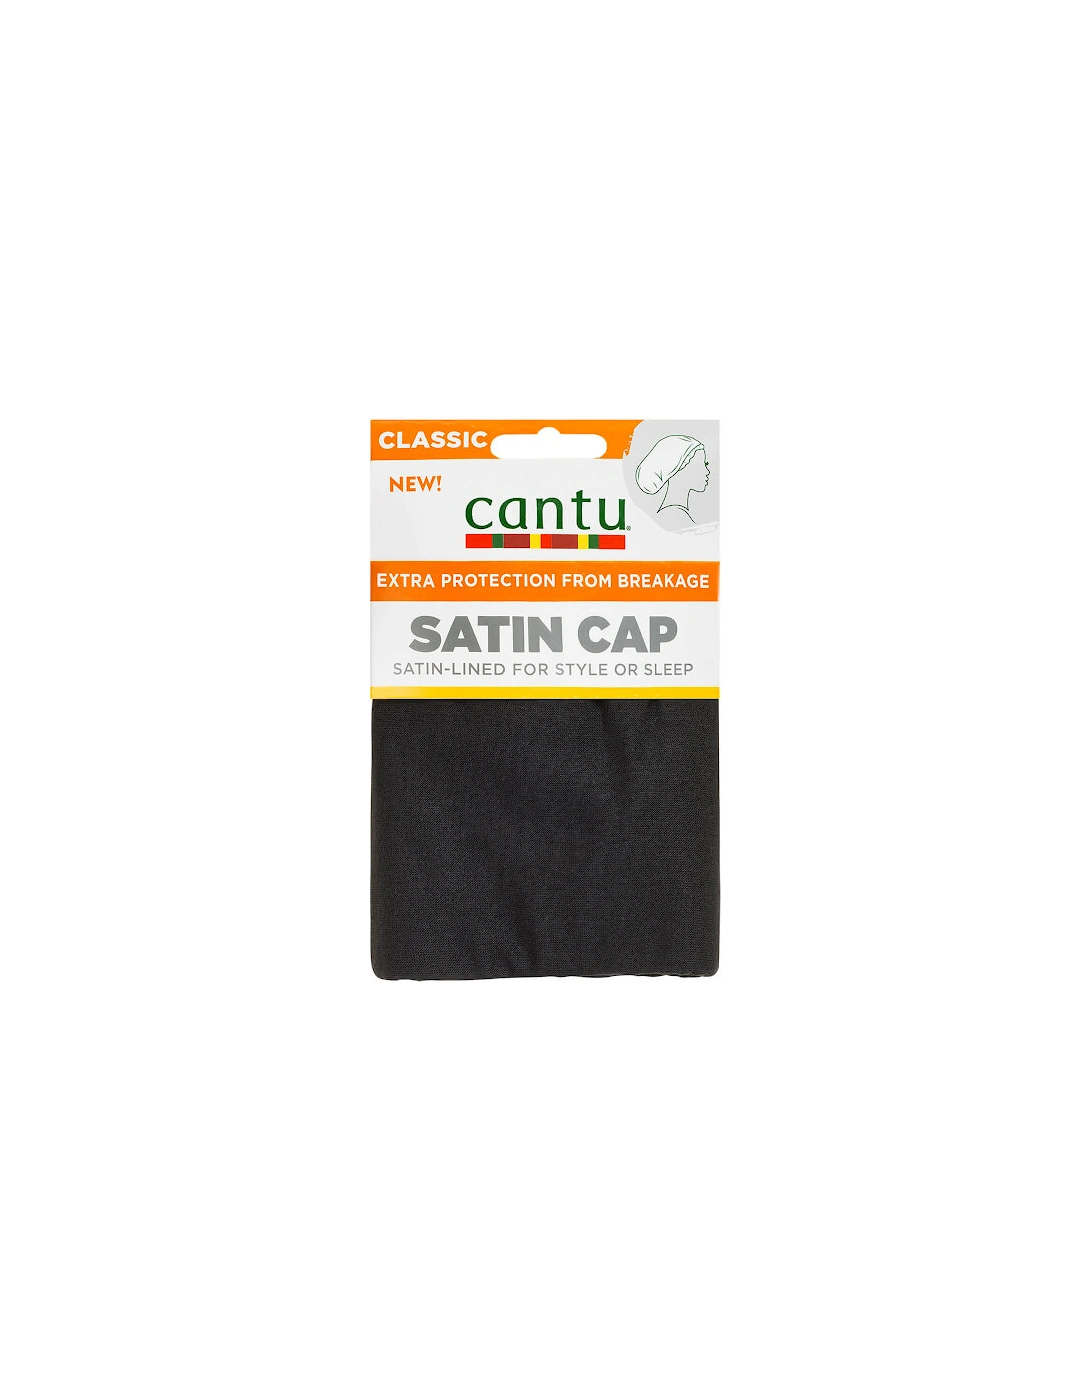 Satin Cap - Classic - Cantu, 2 of 1